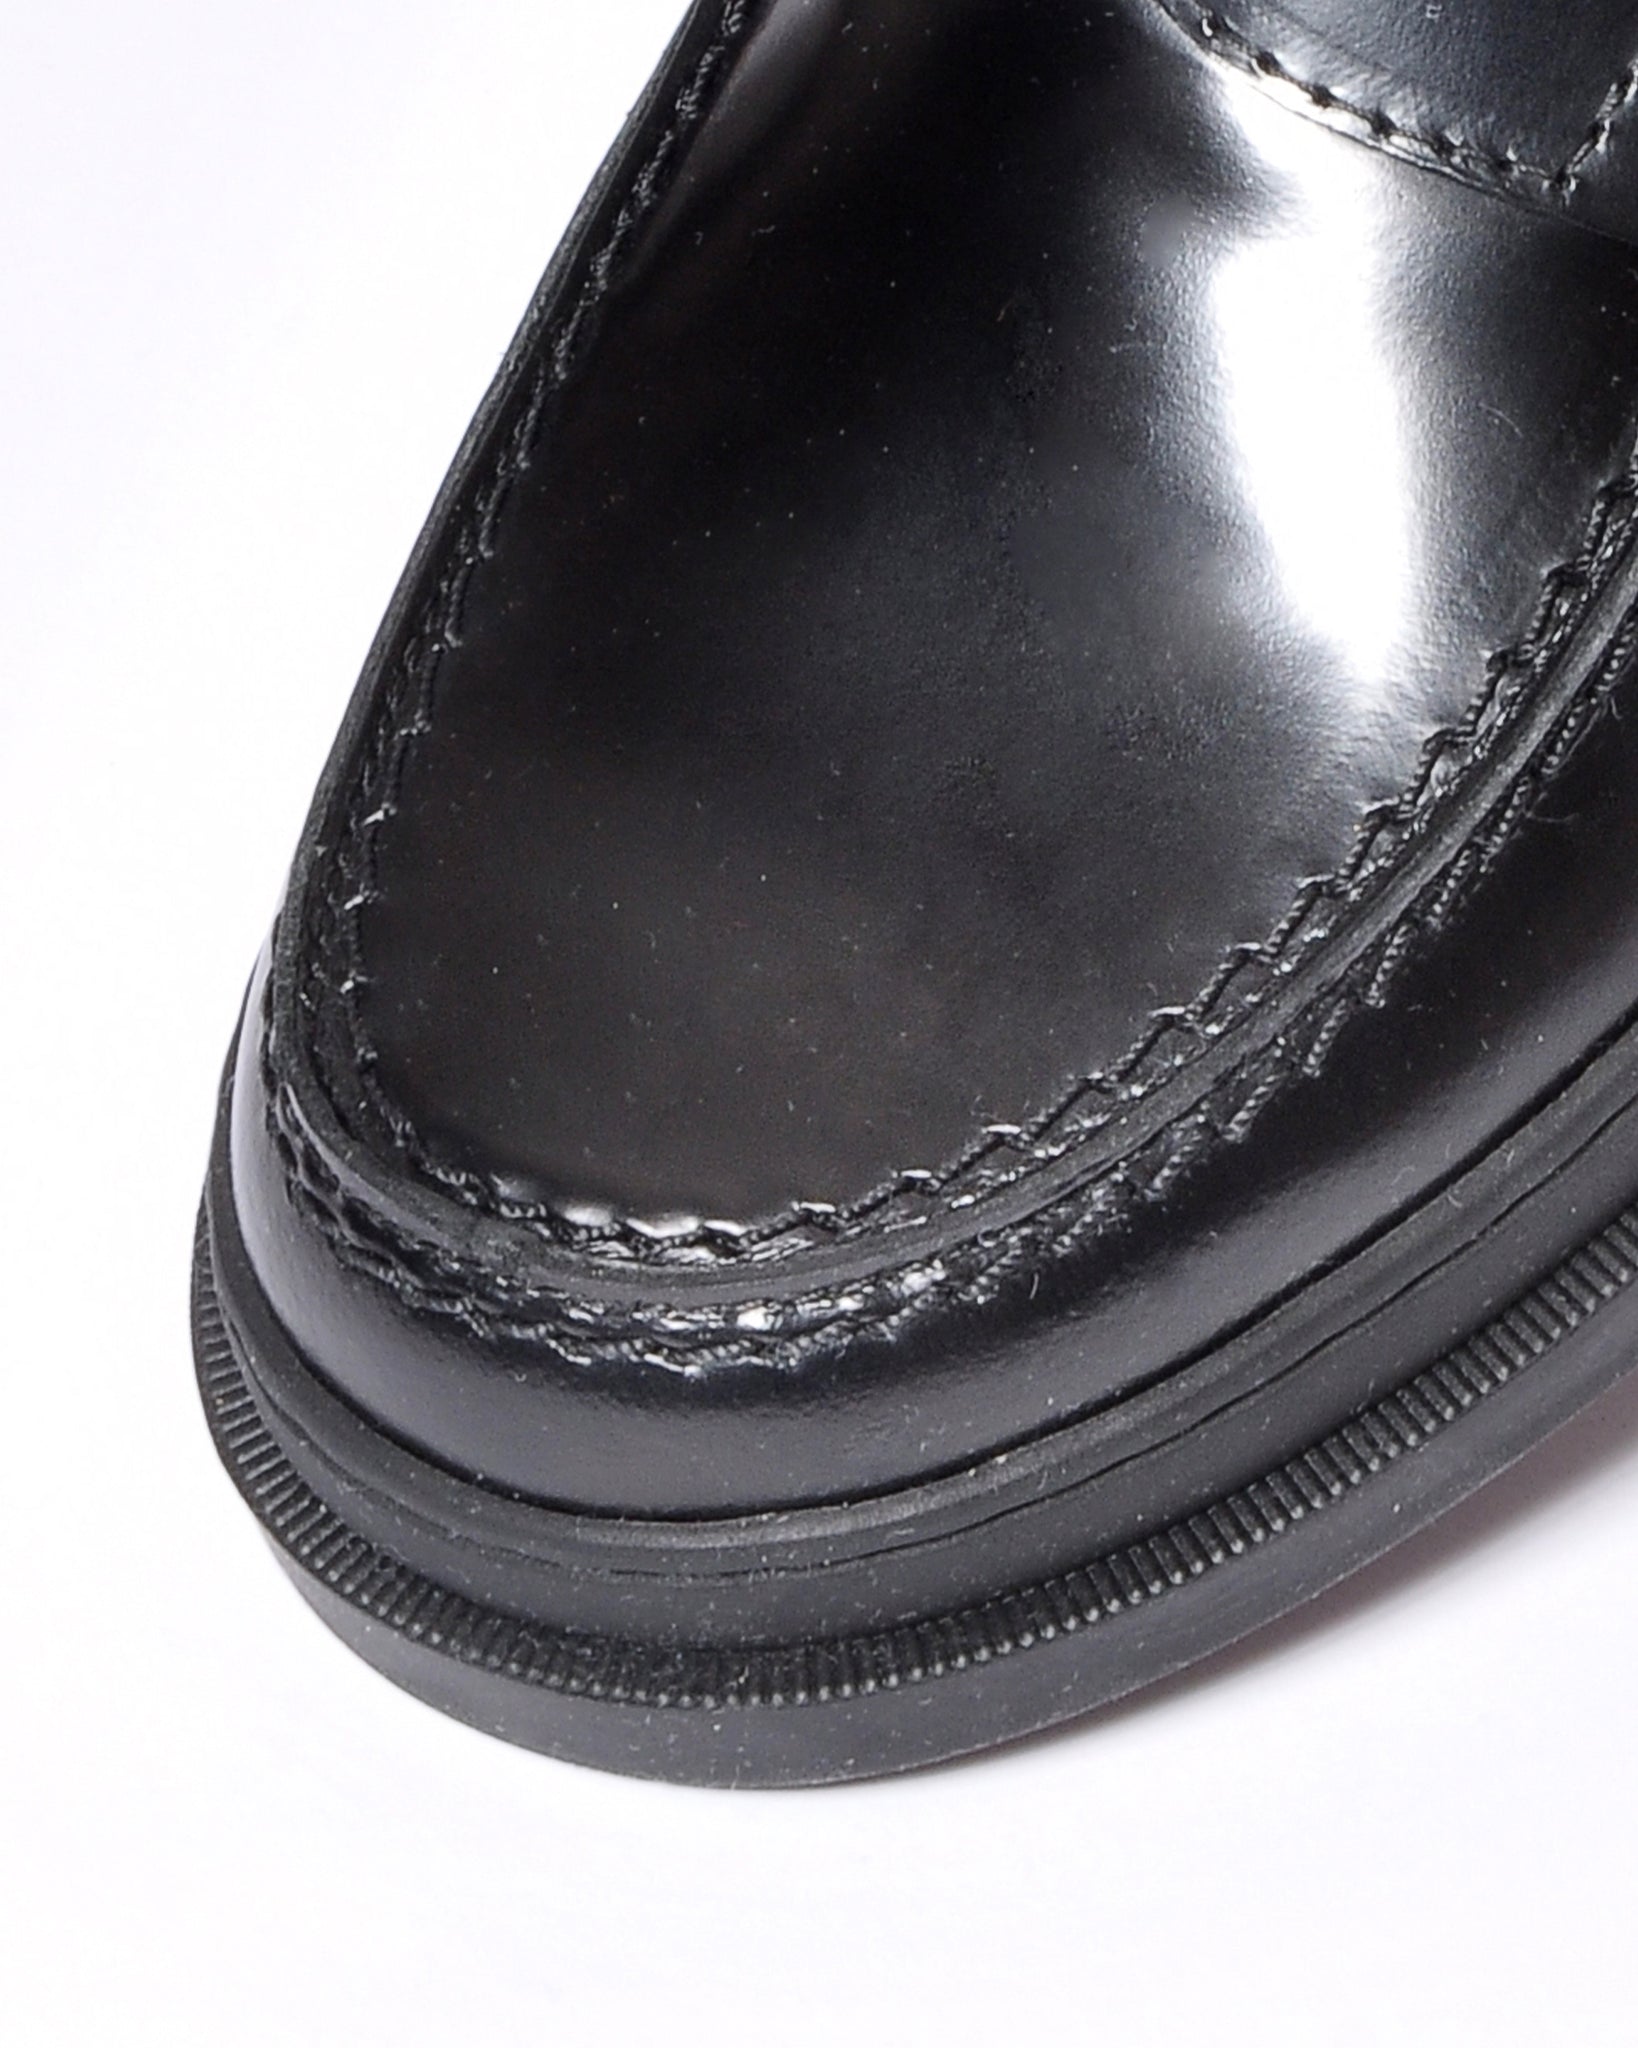 Zapato Escolar Mocasín de Piel Negro Antic Brillo Unisex